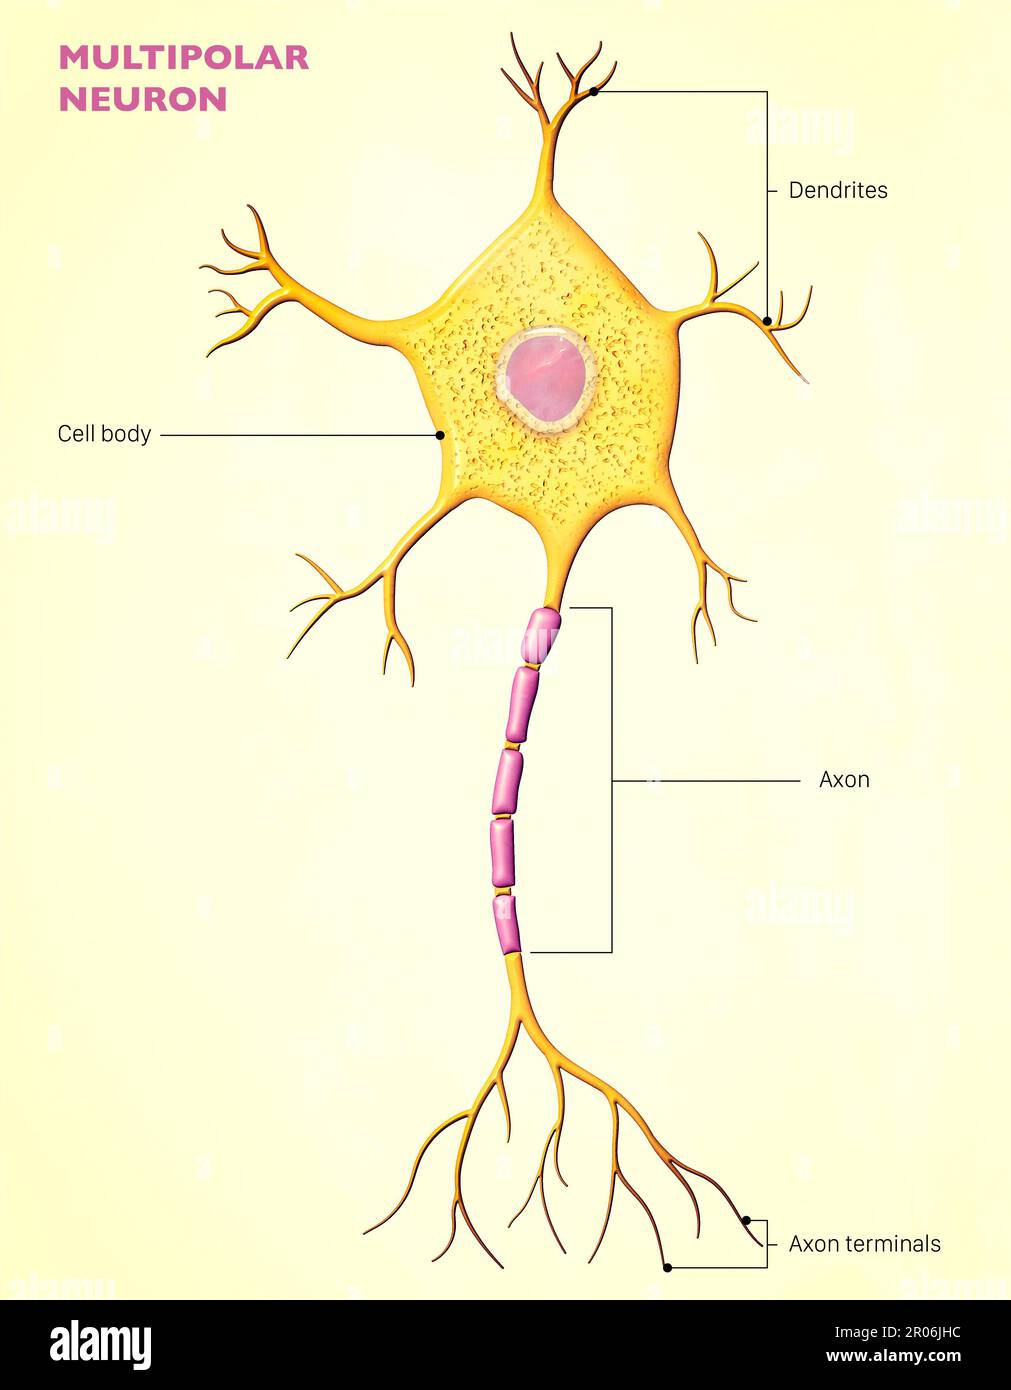 Un neurone multipolare è un tipo di neurone che possiede un singolo assone e molti dendriti, permettendo l'integrazione di informazioni da altri neuroni Foto Stock